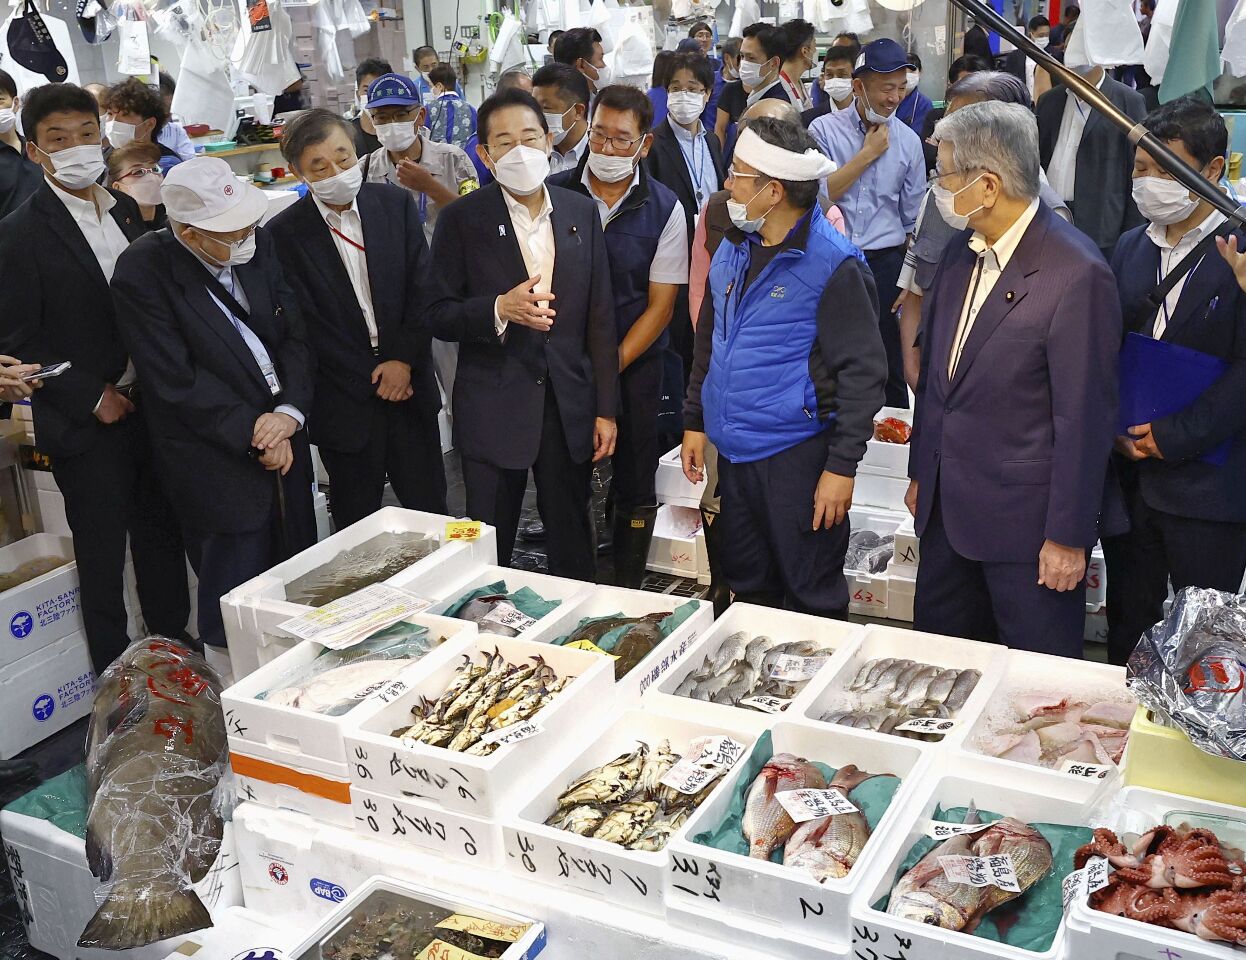 因應中國海鮮禁令 日相岸田承諾採取措施幫助漁業